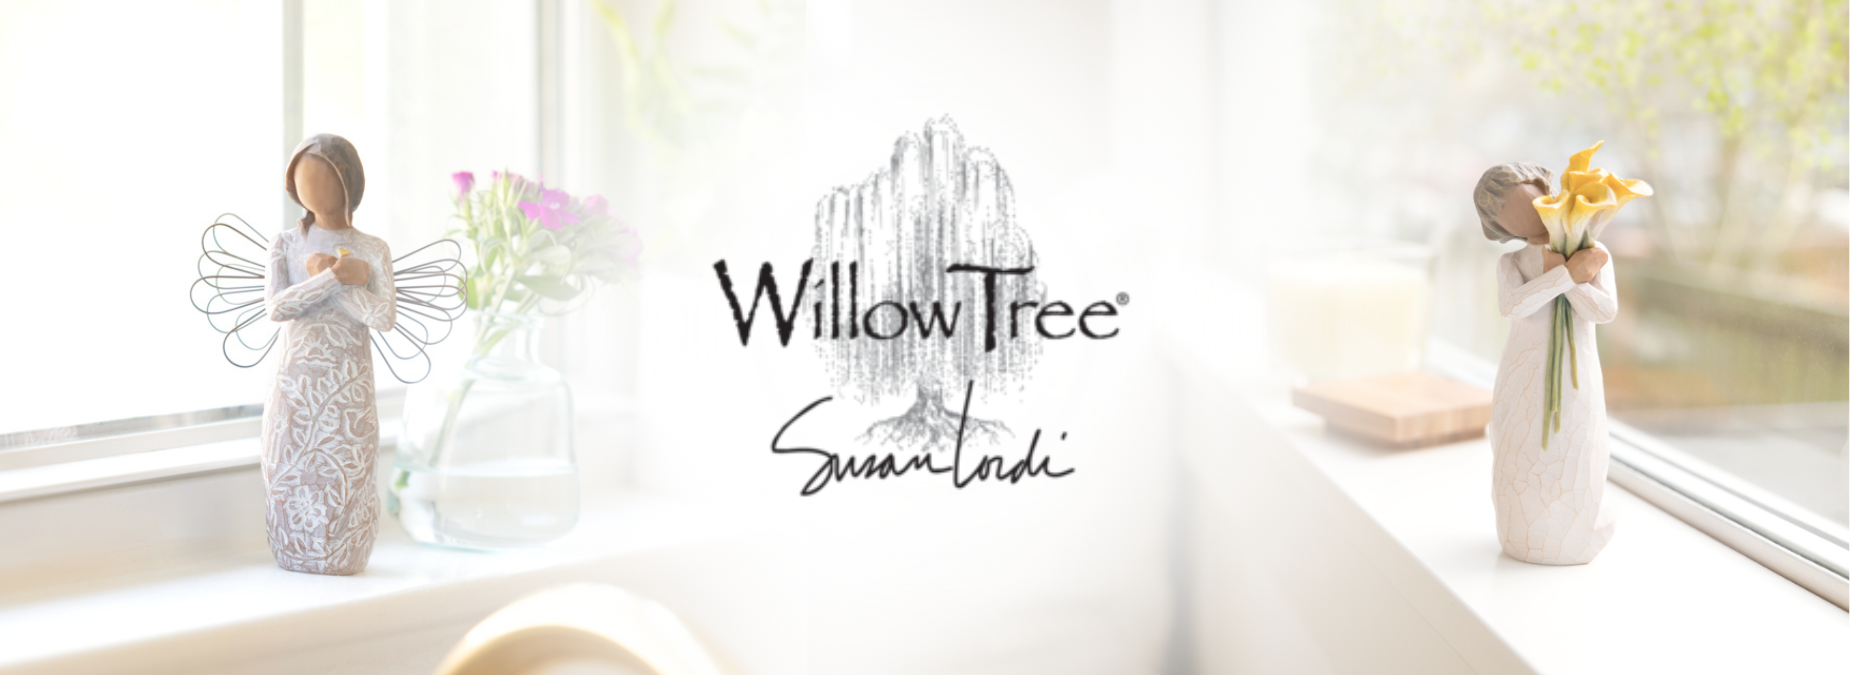 Willow Tree - Susan Lordi